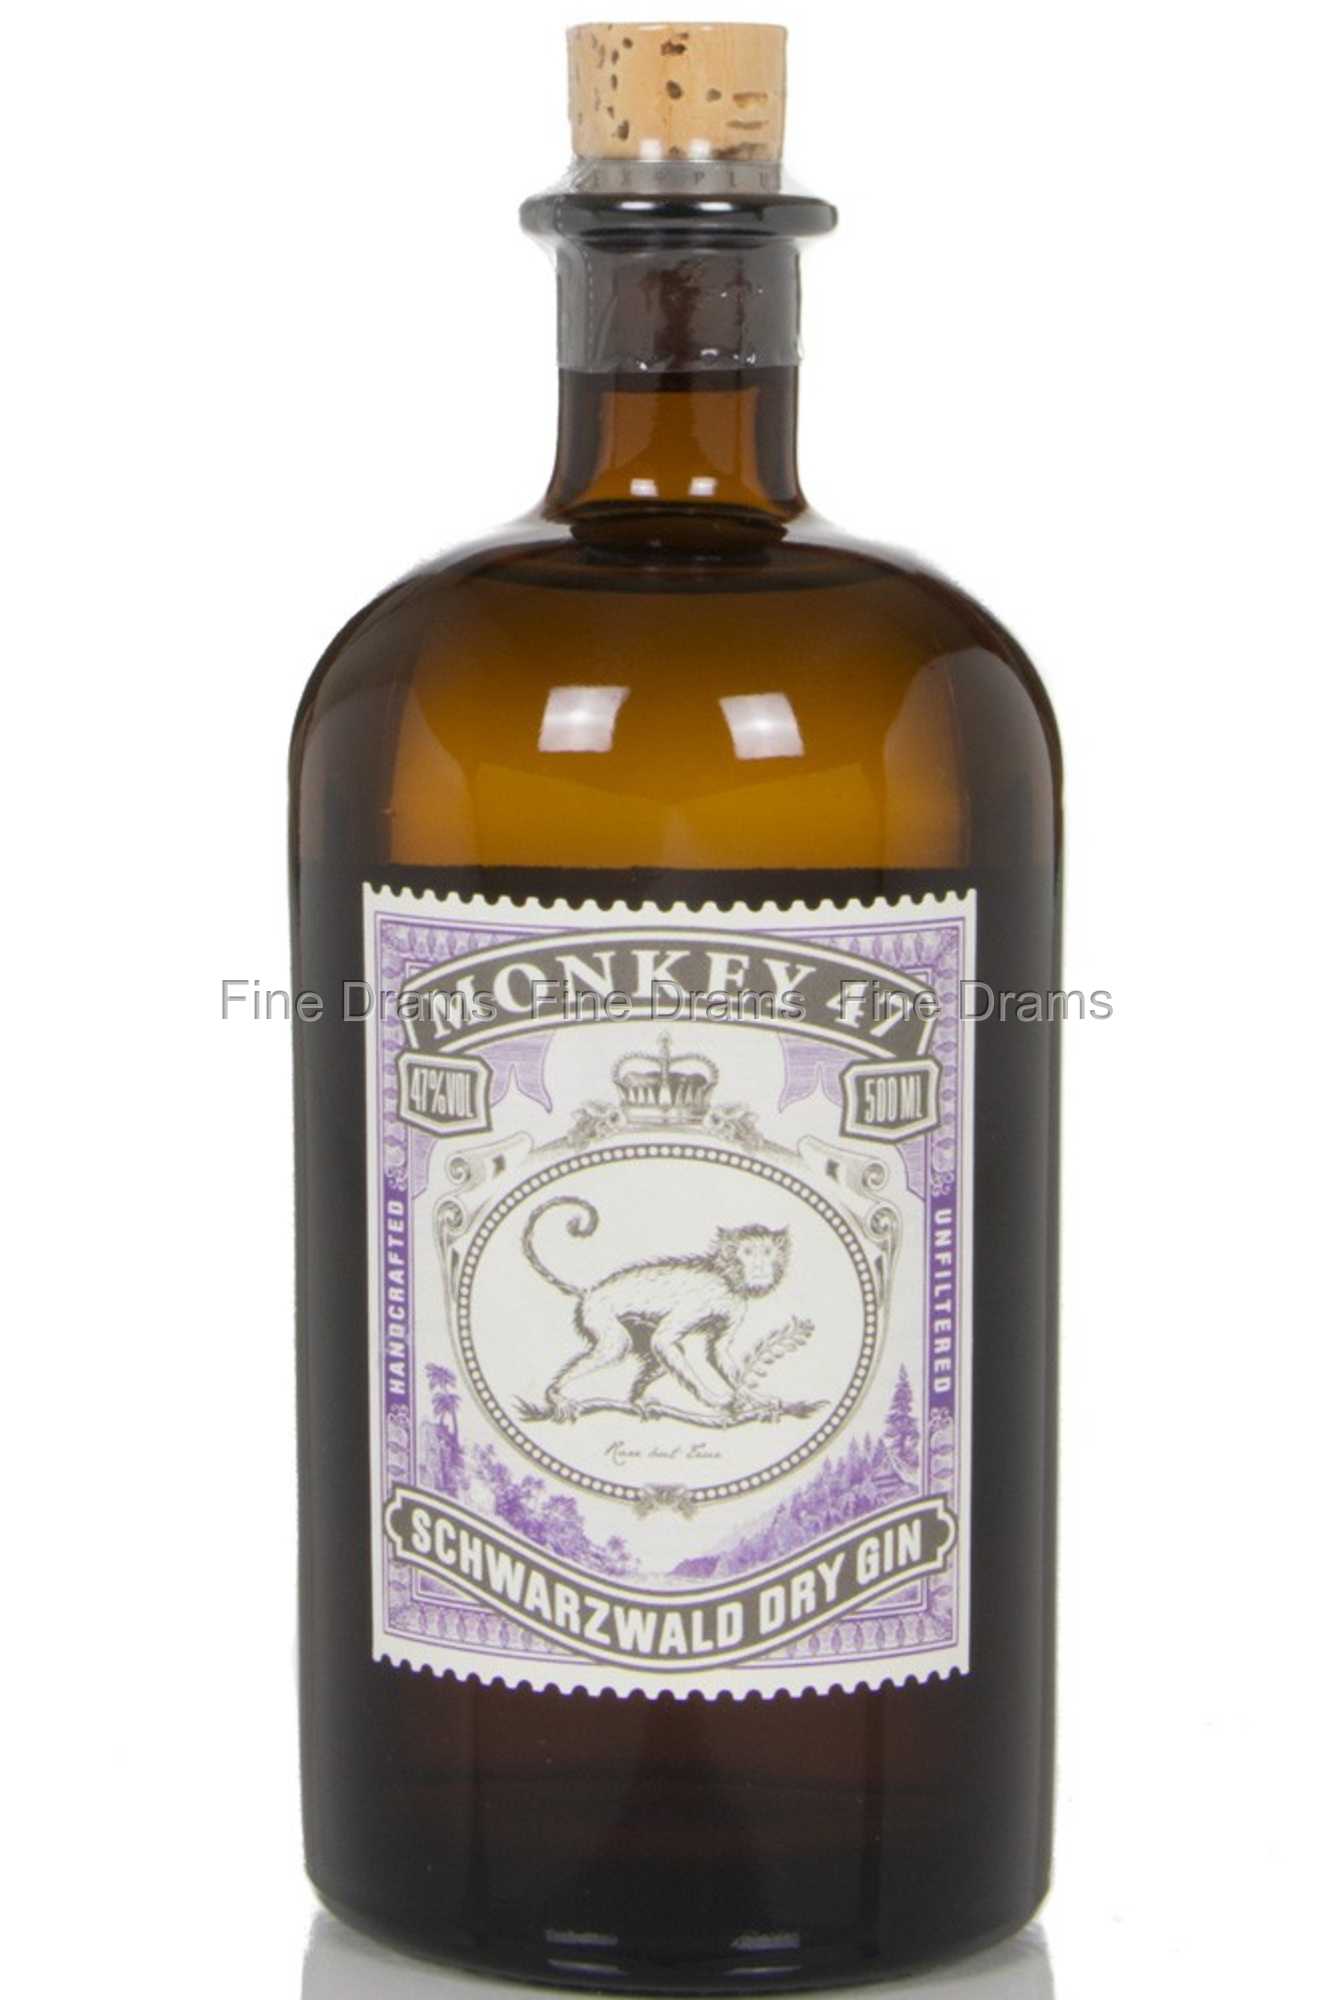 Schwarzwald Dry 47 Gin Monkey